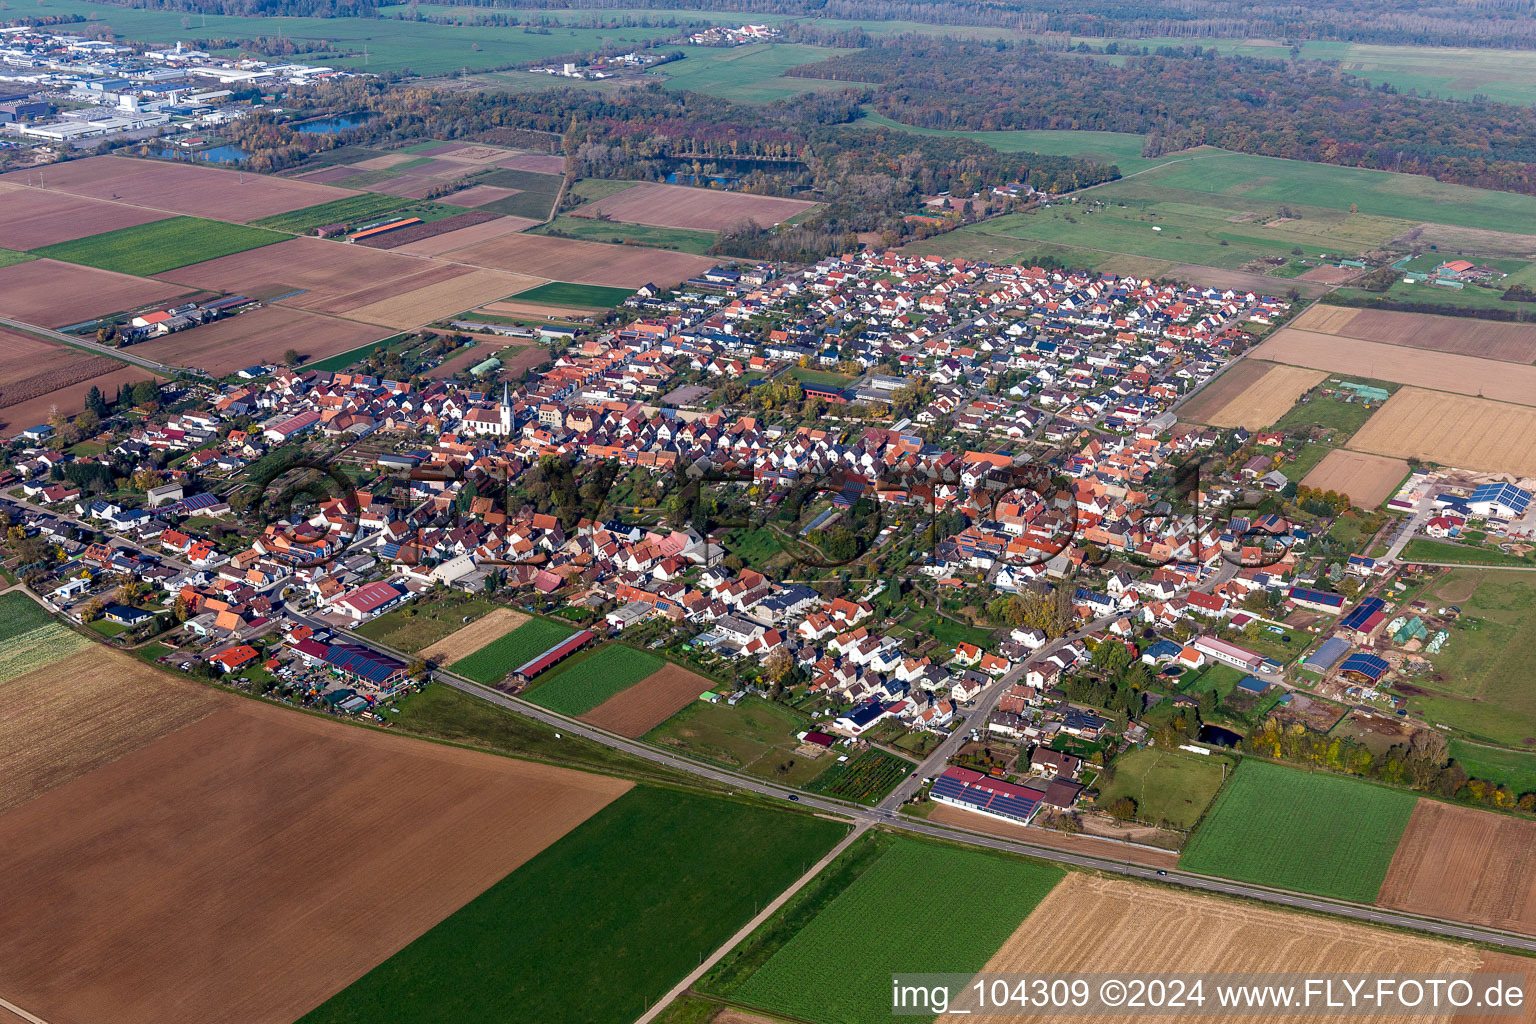 Luftbild von Dorf - Ansicht am Rande von landwirtschaftlichen Feldern und Nutzflächen in Ottersheim bei Landau im Bundesland Rheinland-Pfalz, Deutschland